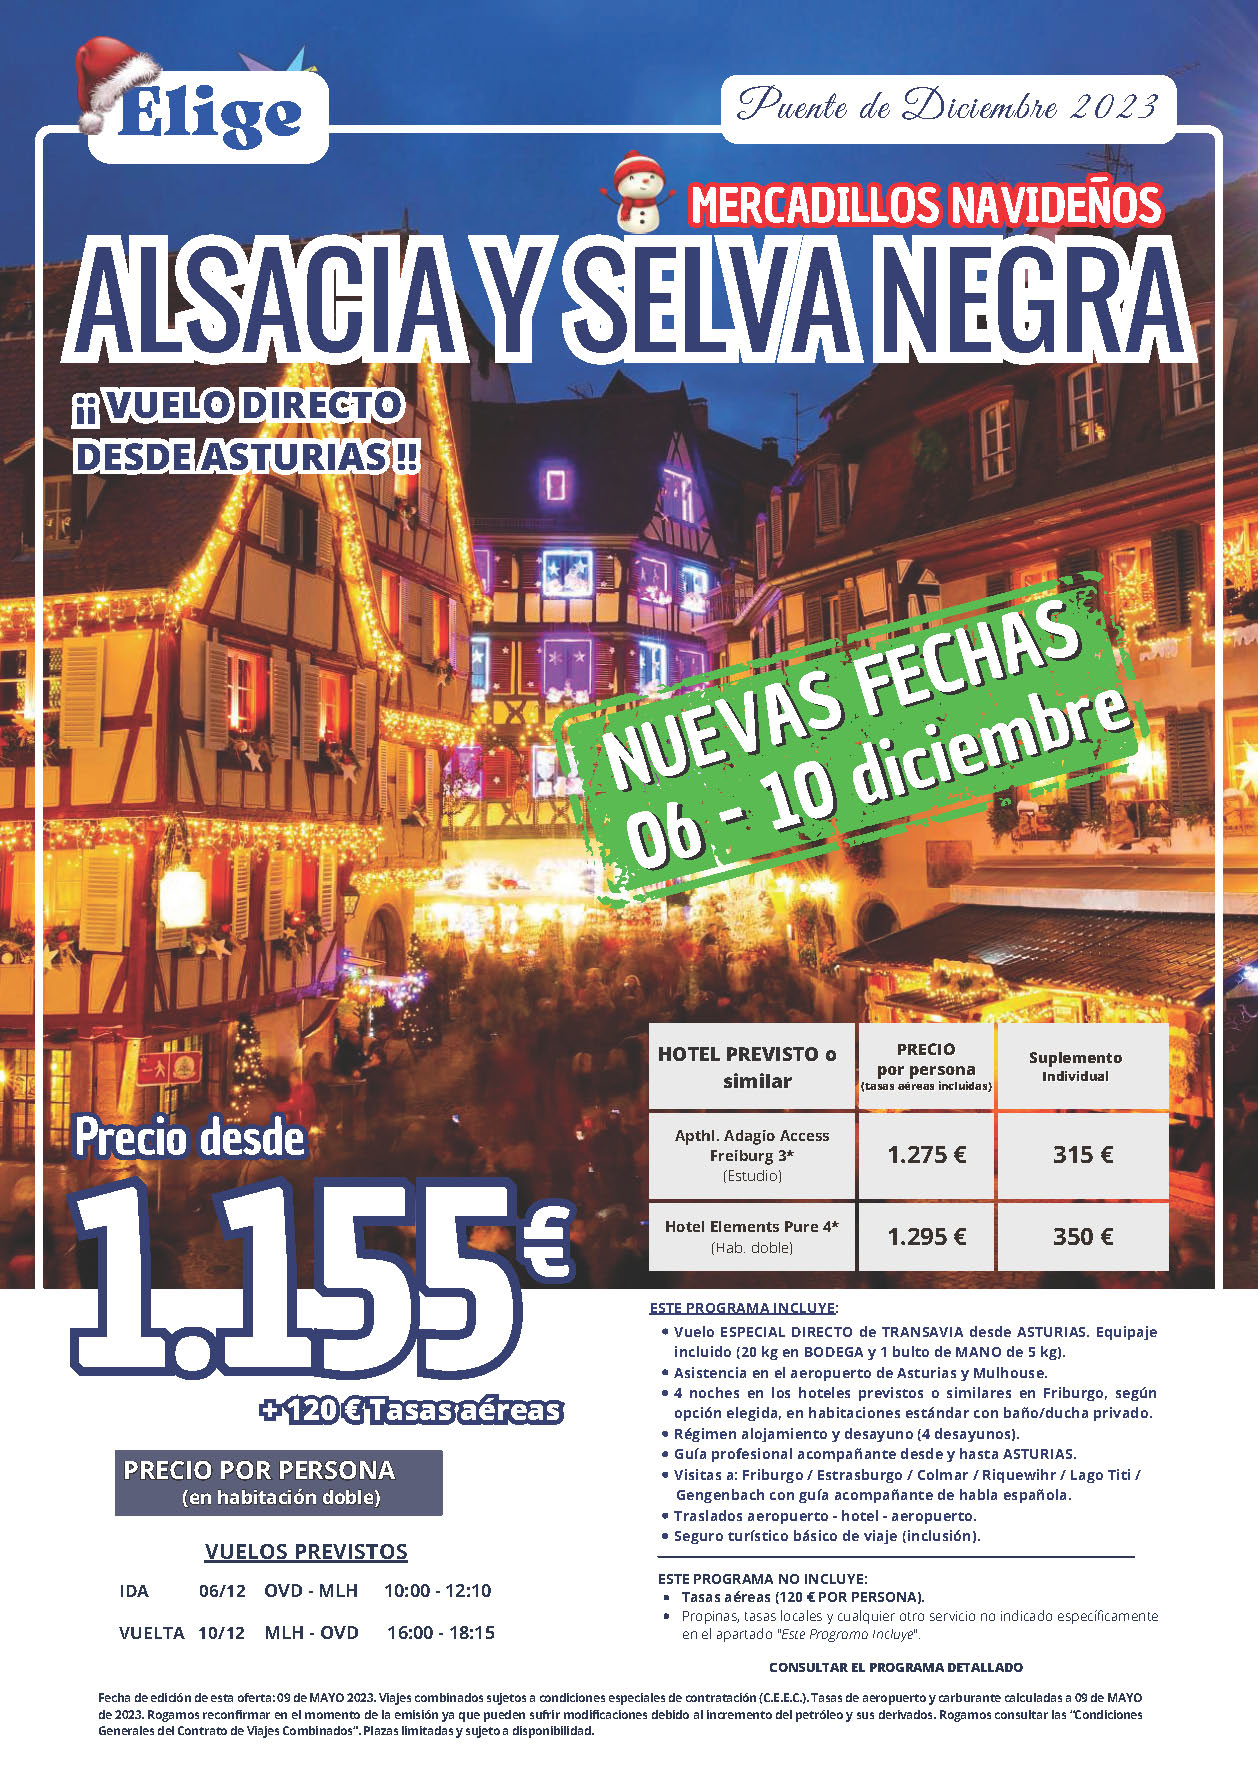 Oferta Elige tu Viaje Puente de Diciembre 2023 circuito Alsacia y Selva Negra 5 dias salida 6 diciembre vuelo especial directo desde Asturias